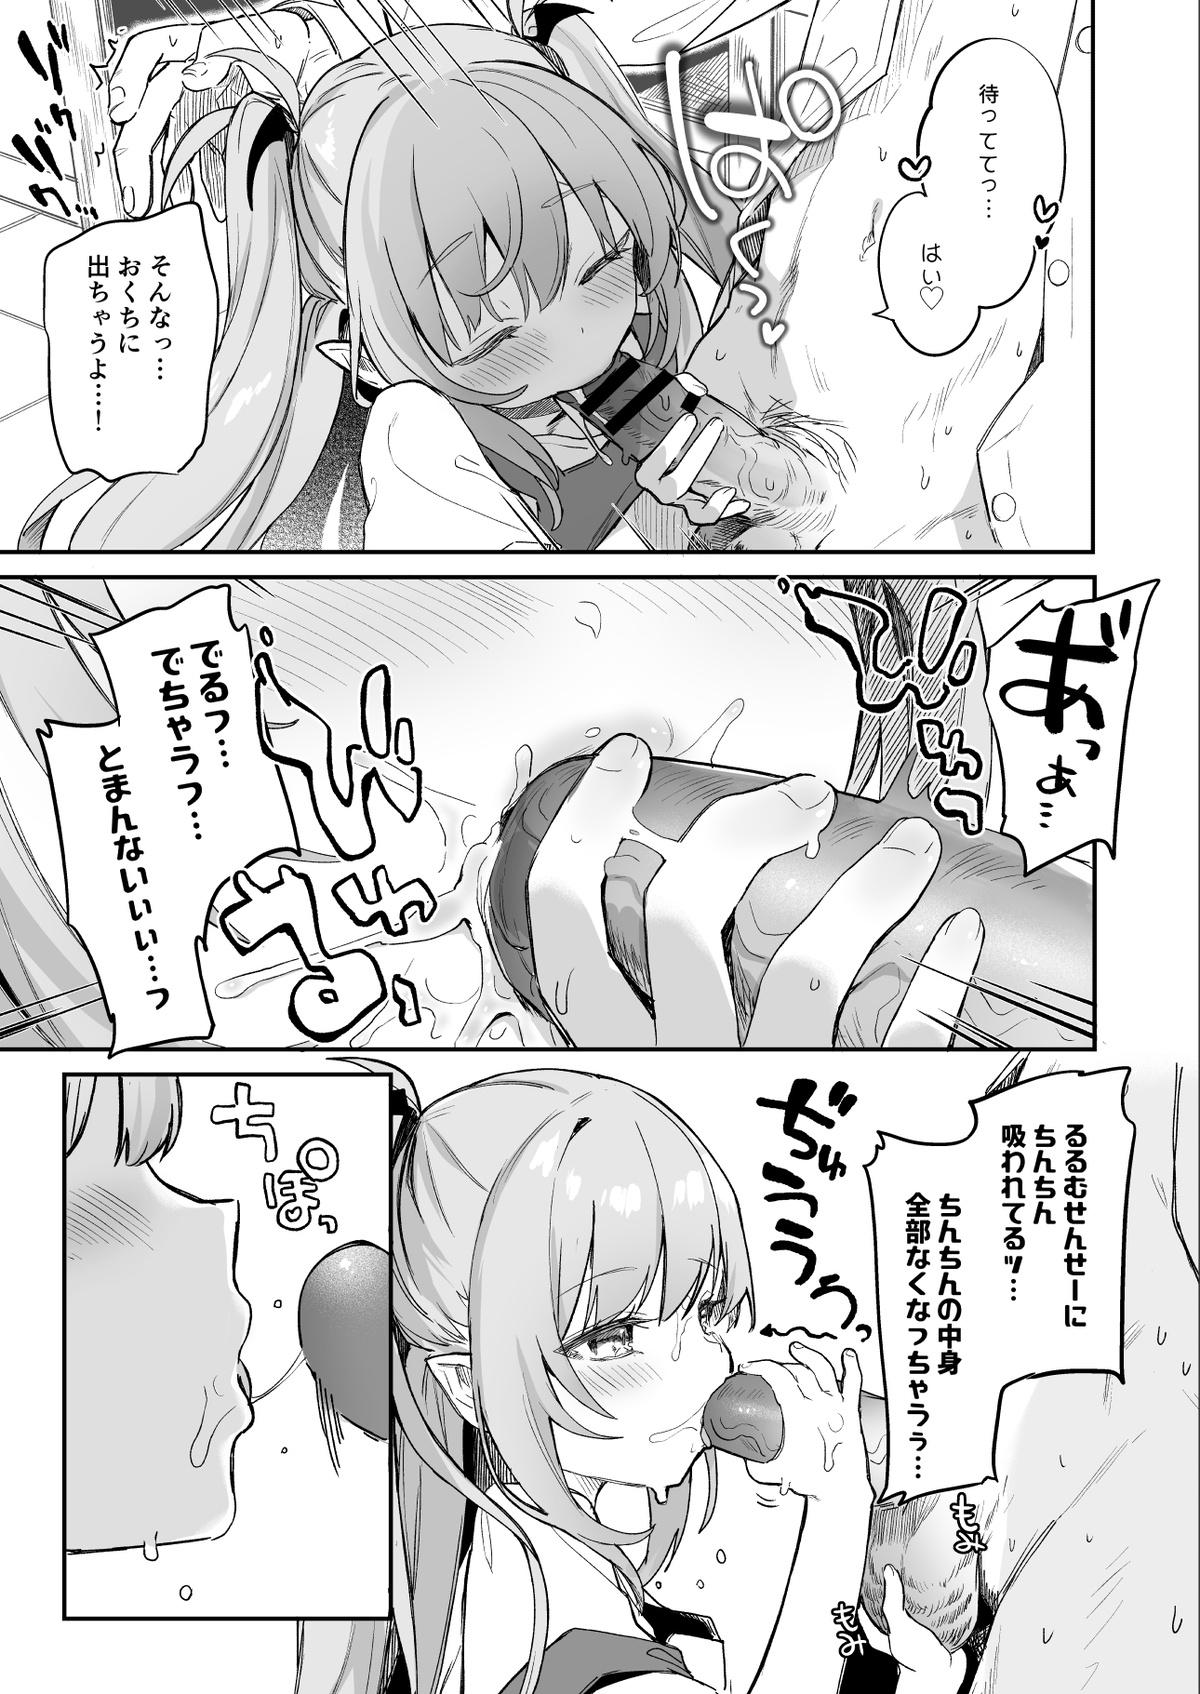 Gay Military [Tamano Kedama] Kodomo no Hi (Imishin) ni Mukete Manga o Kaku - Original Foursome - Page 7